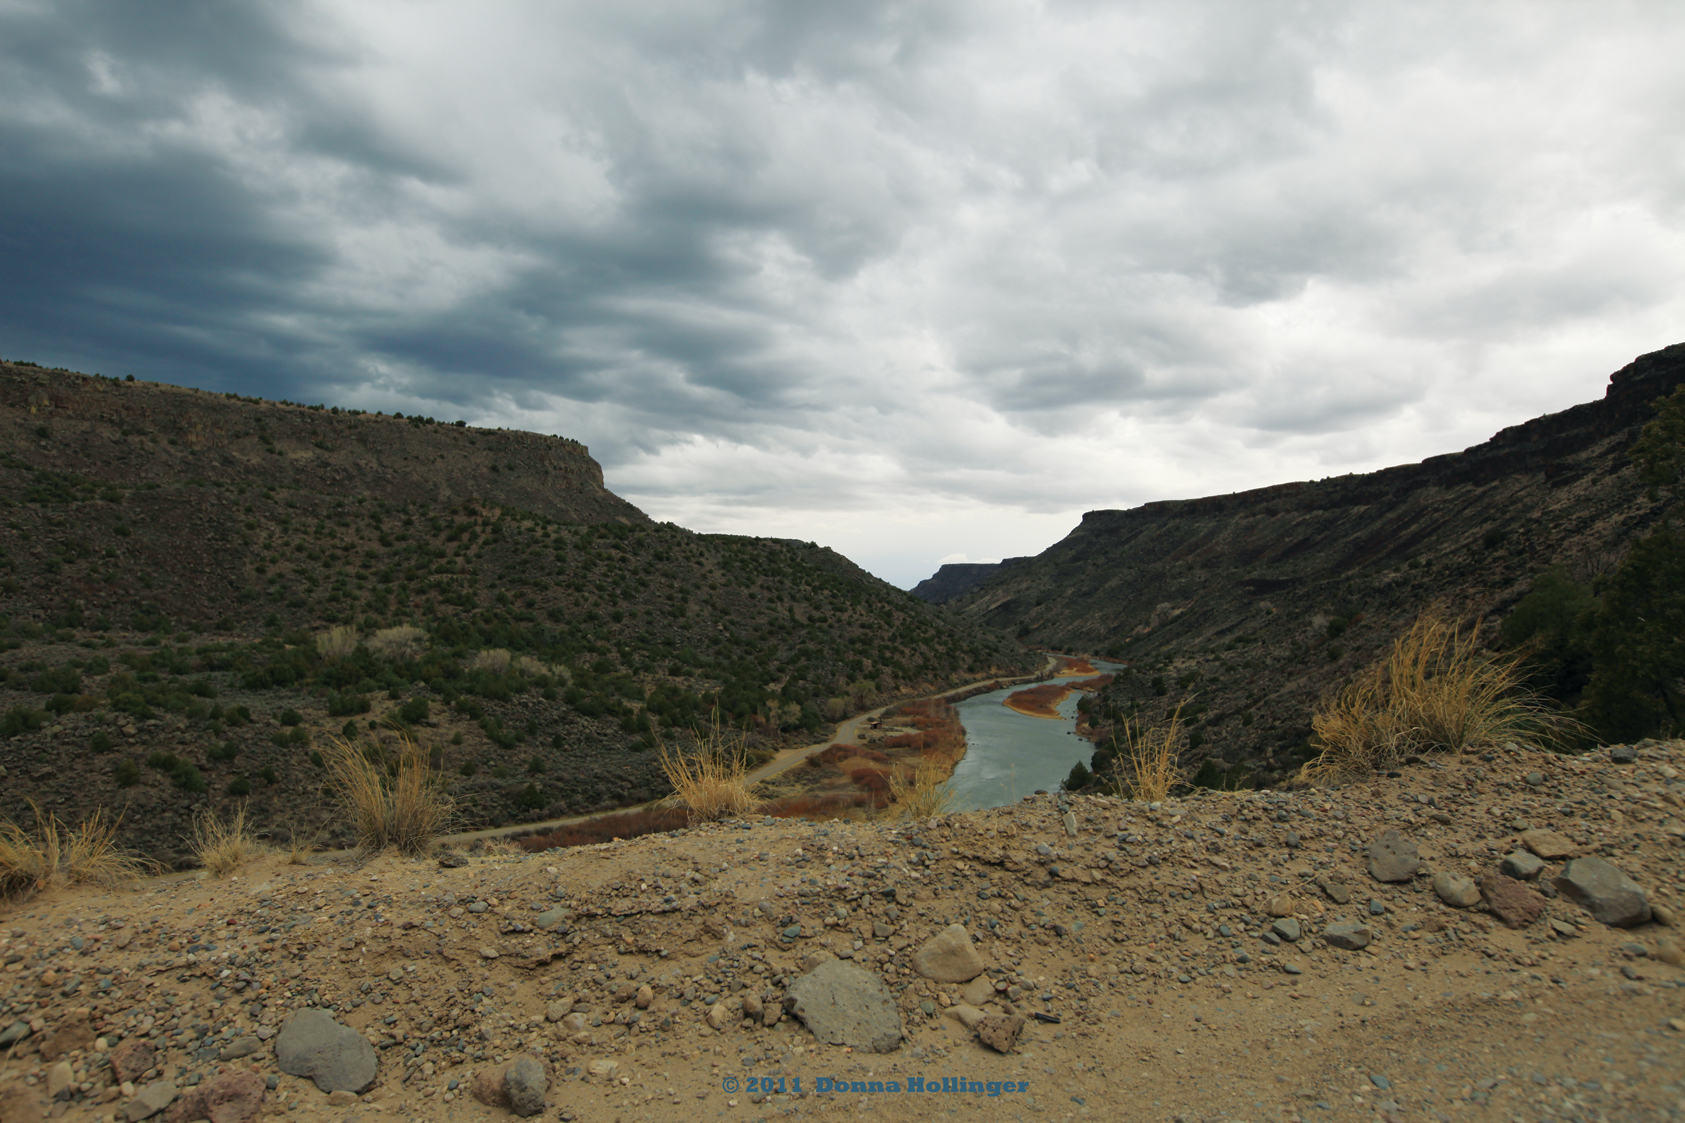 Gorge at the Rio Grande